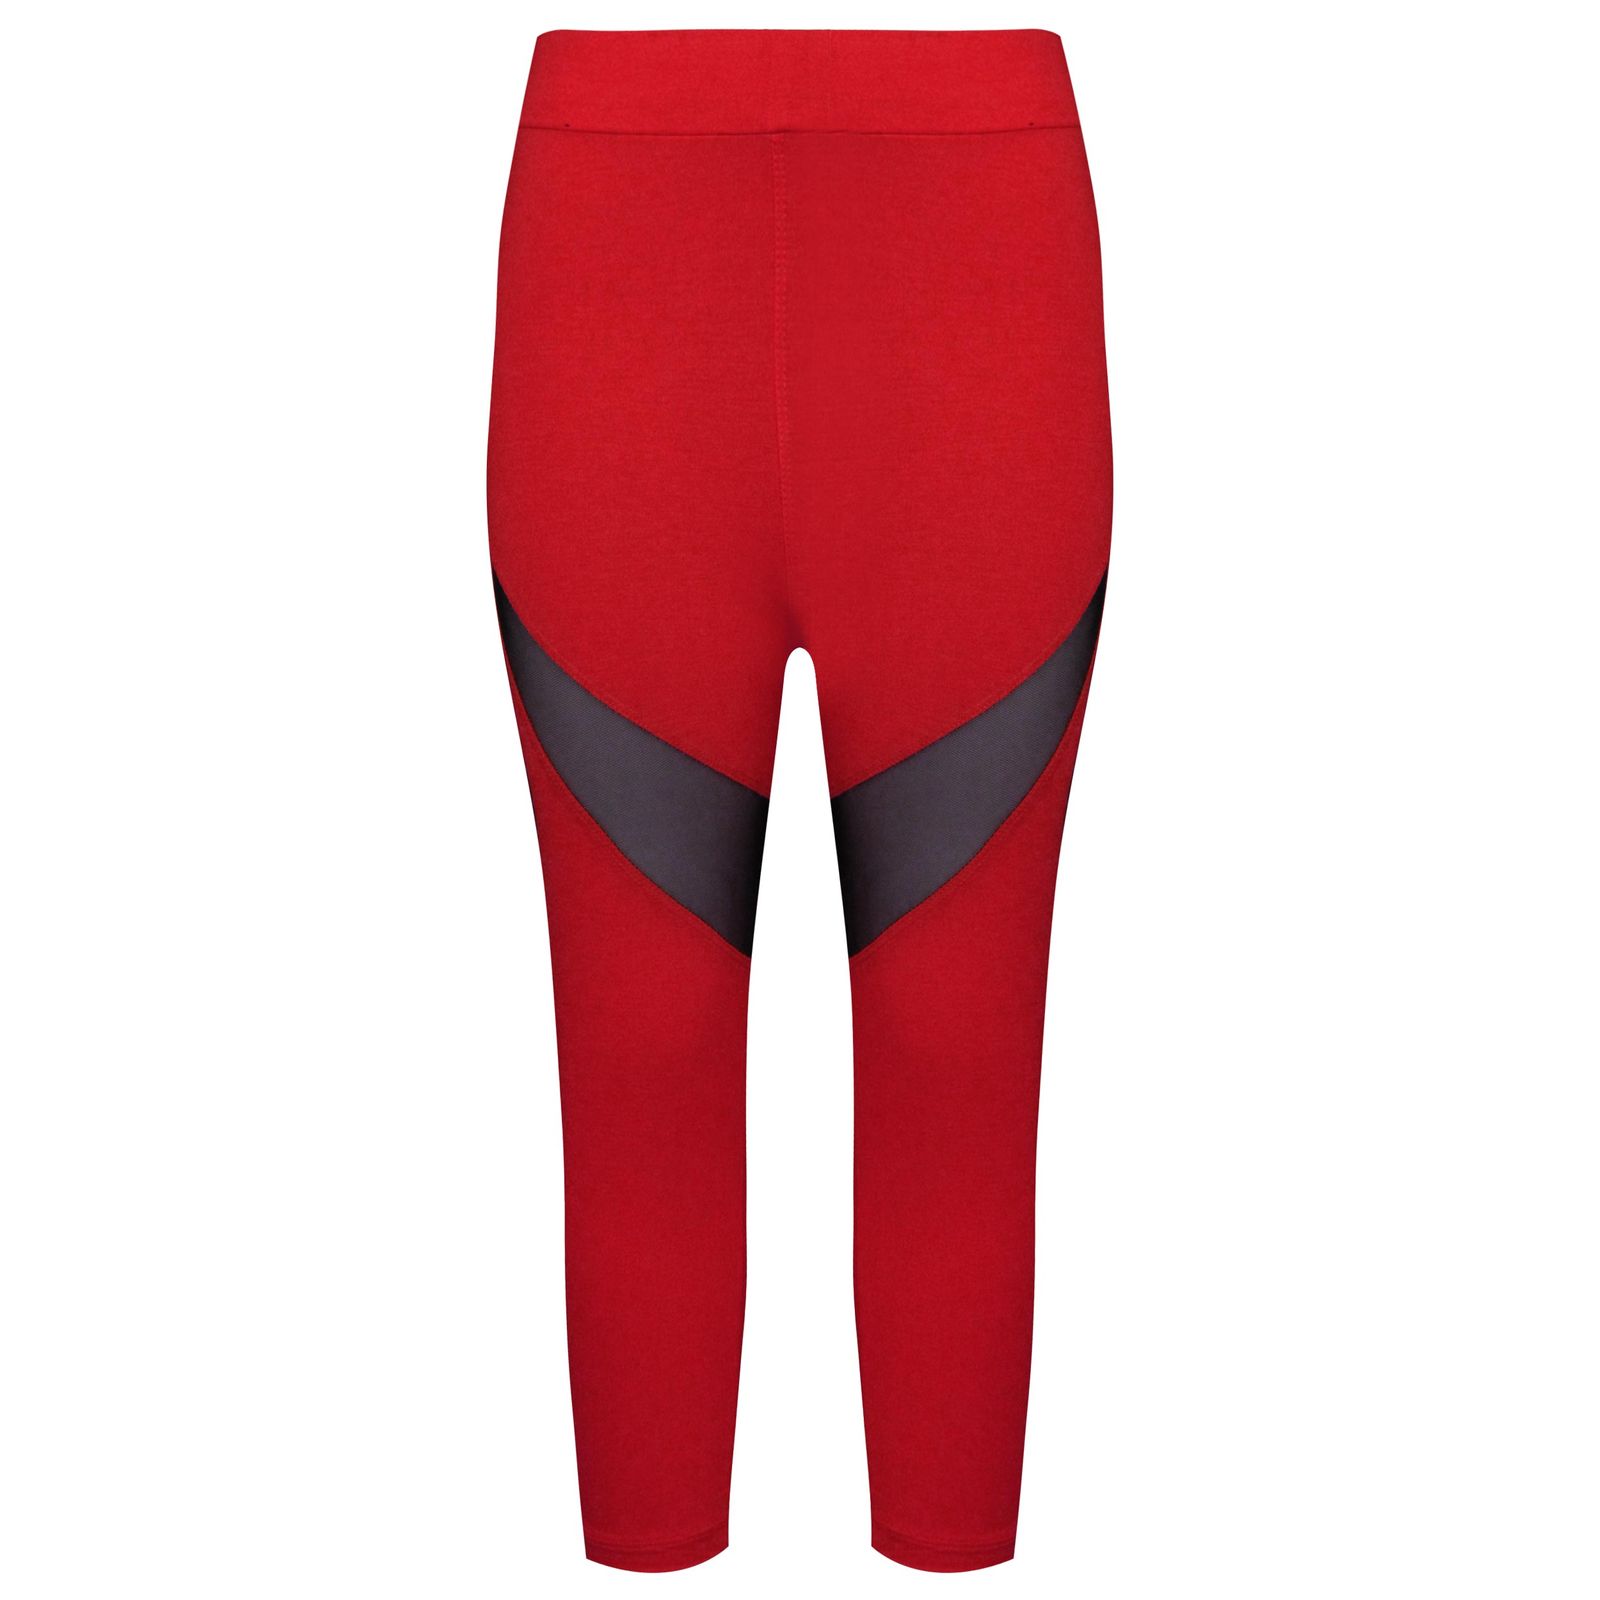 شلوار ورزشی زنانه ماییلدا مدل 4065-1279 رنگ قرمز